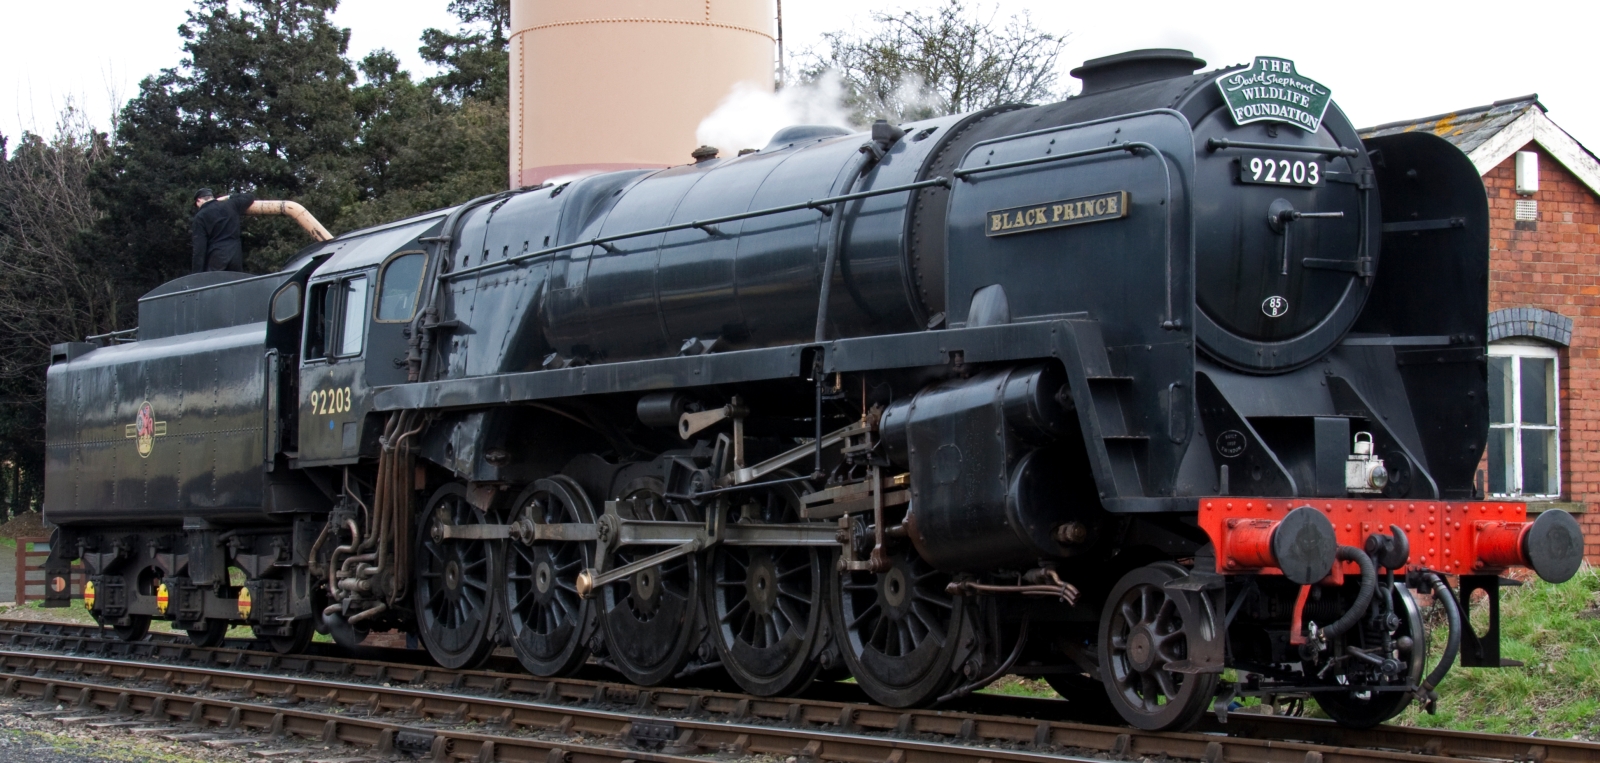 No. 92203 “Black Prince” in 2010 at Toddington